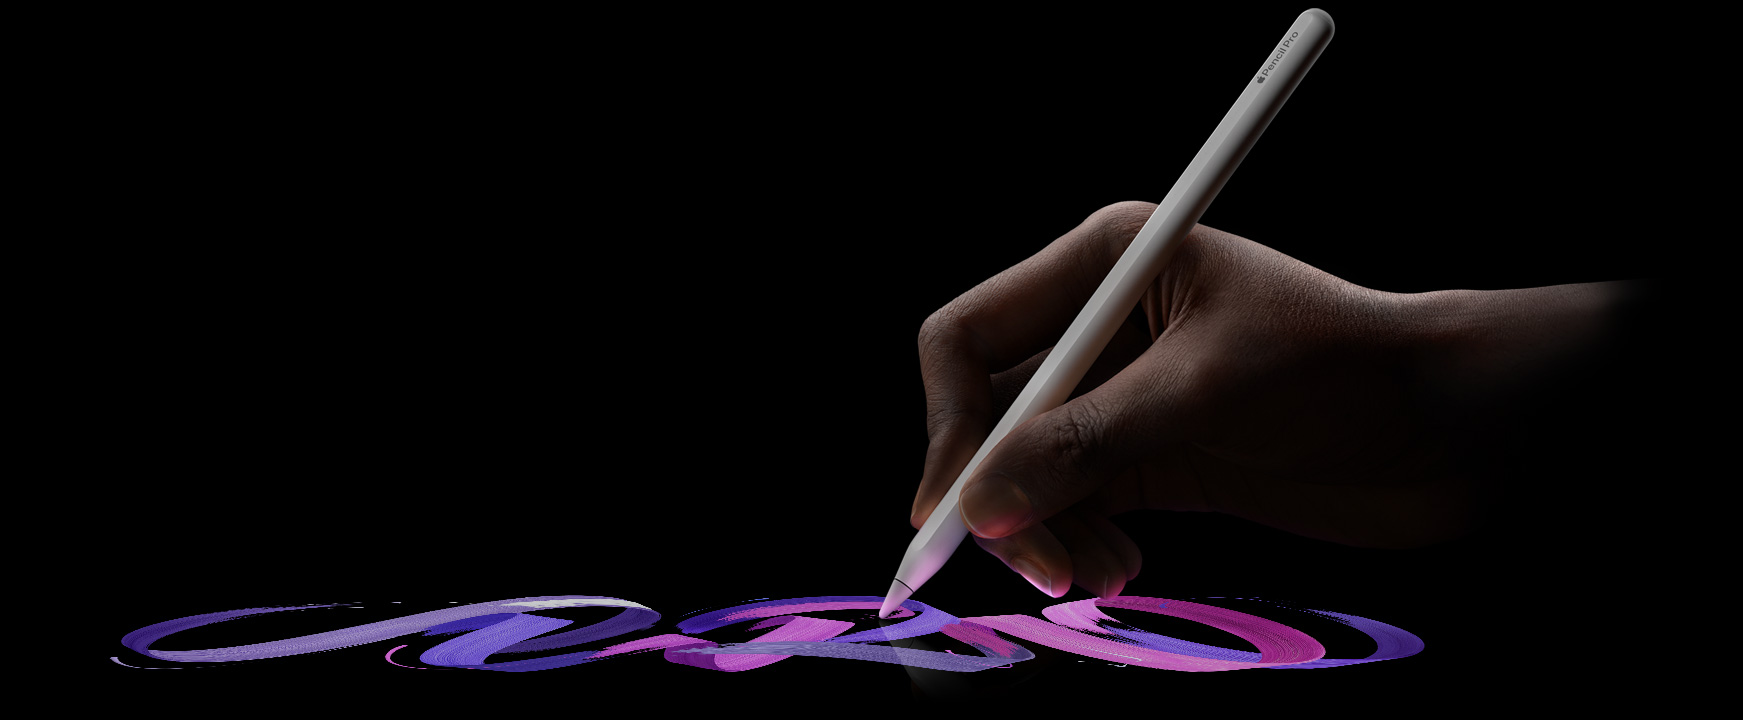 ユーザーがApple Pencil Proを持ち、色あざやかなブラシの線を描いている。